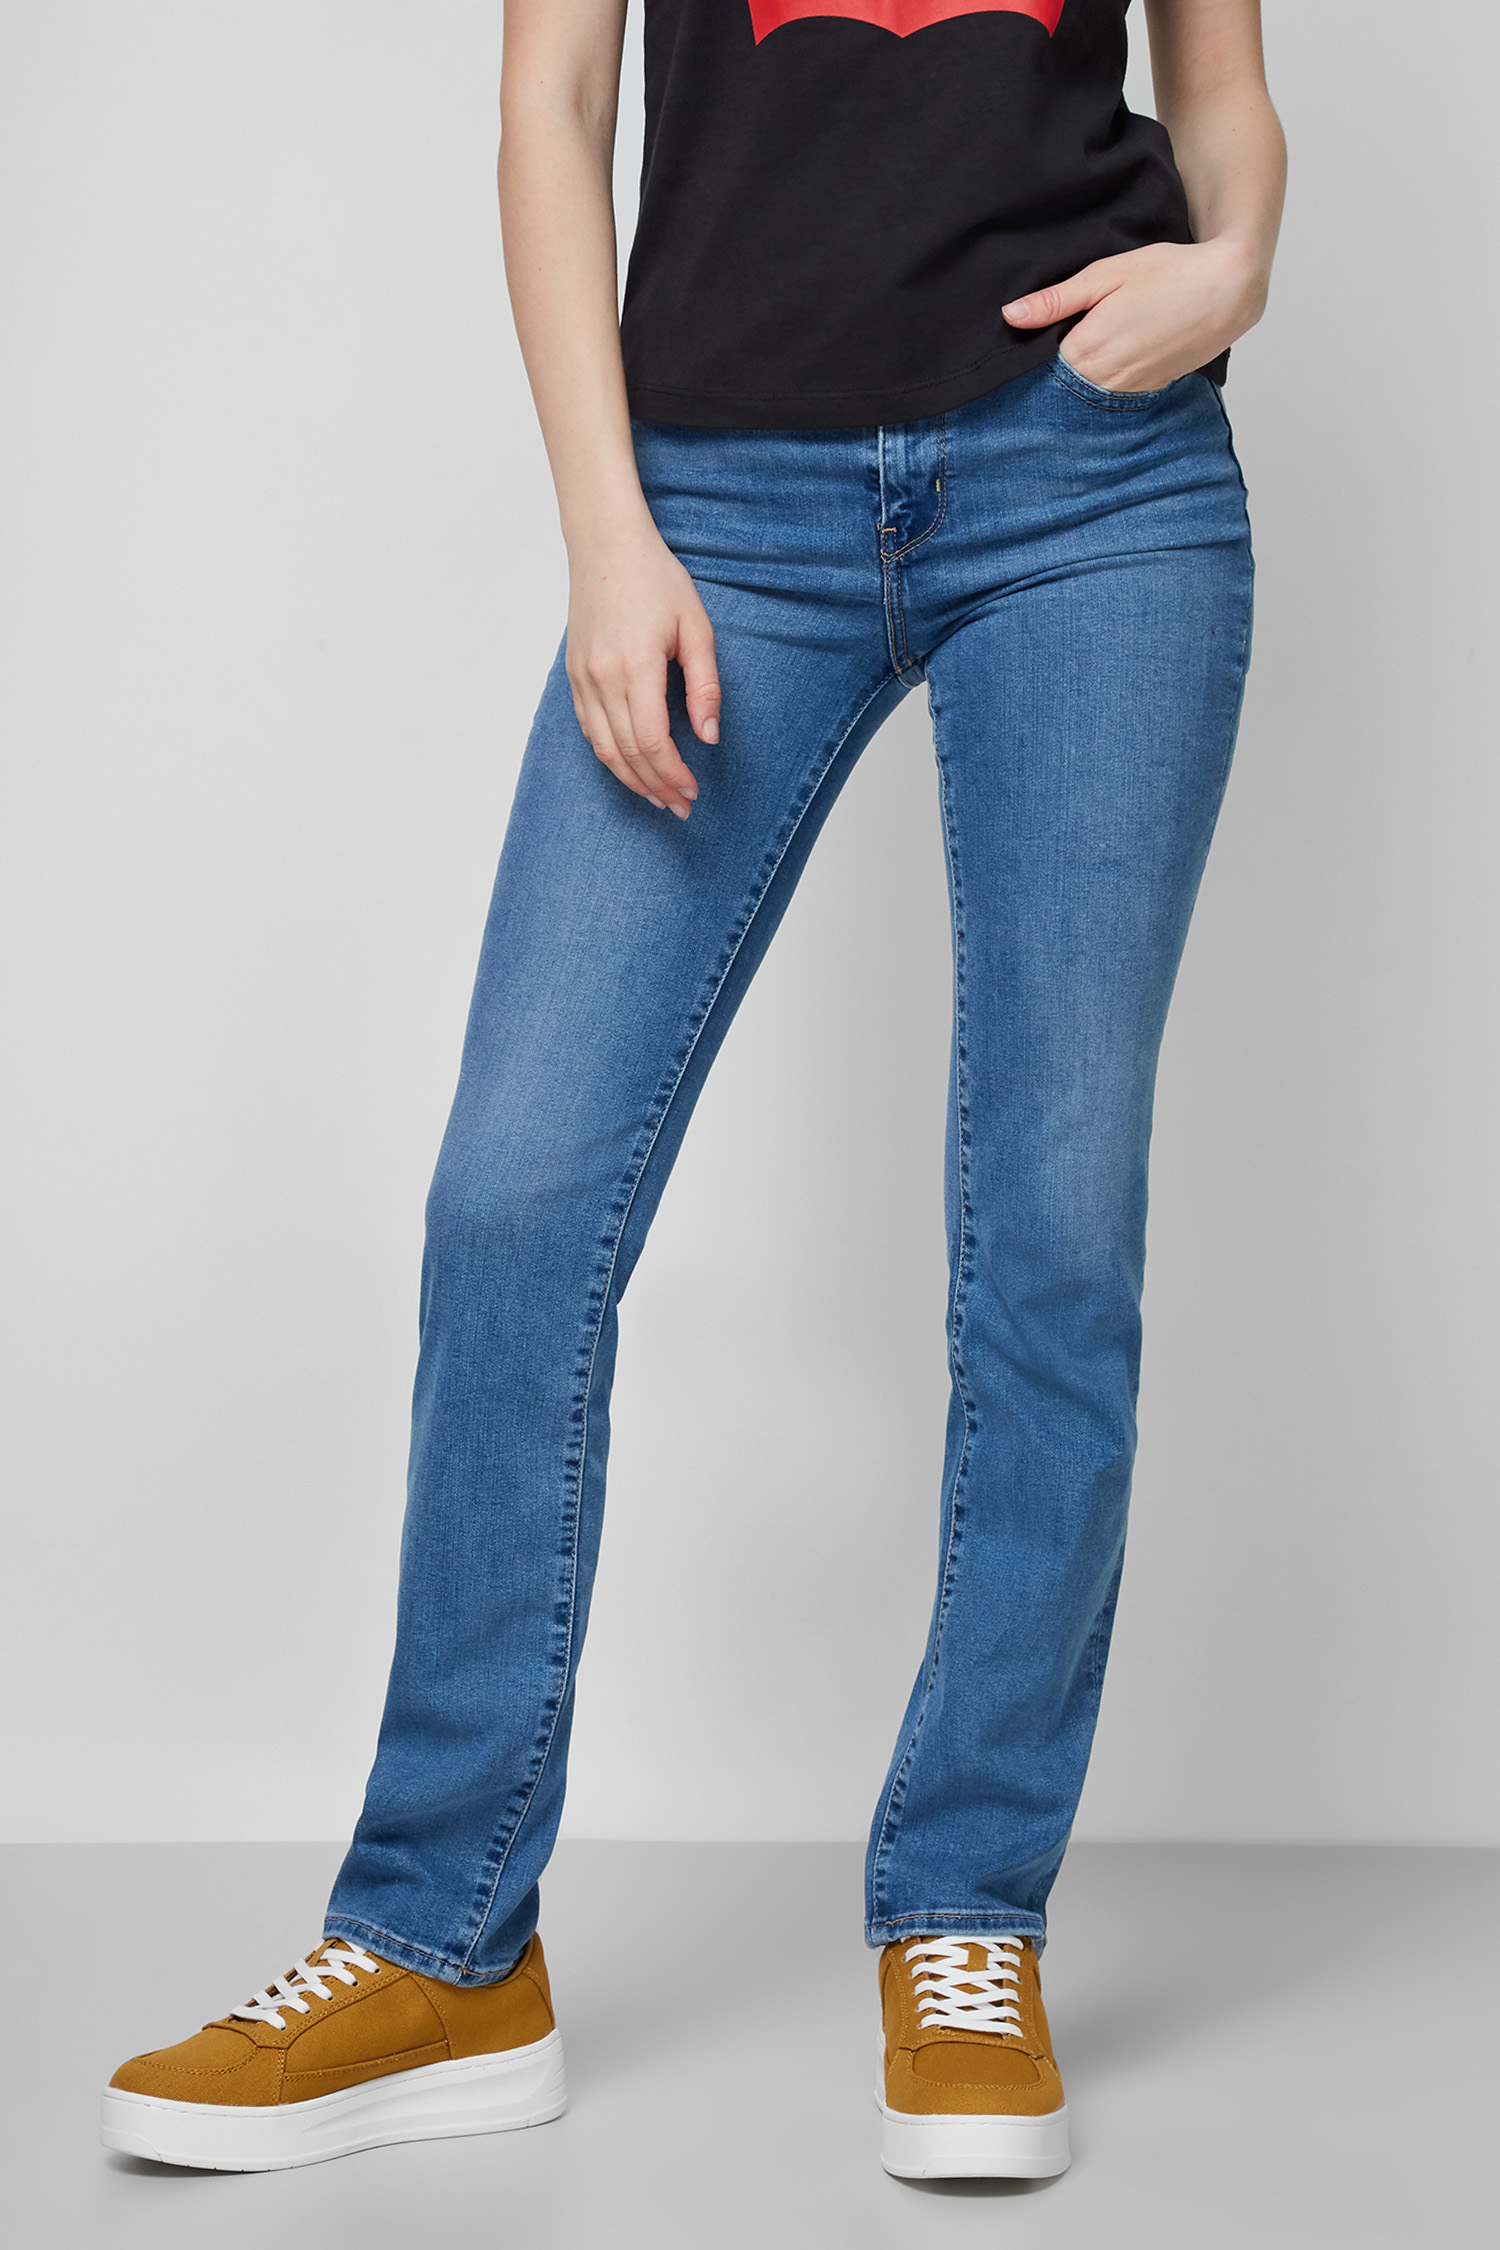 Жіночі сині джинси 724™ High-Rise Straight Levi’s® 18883;0124